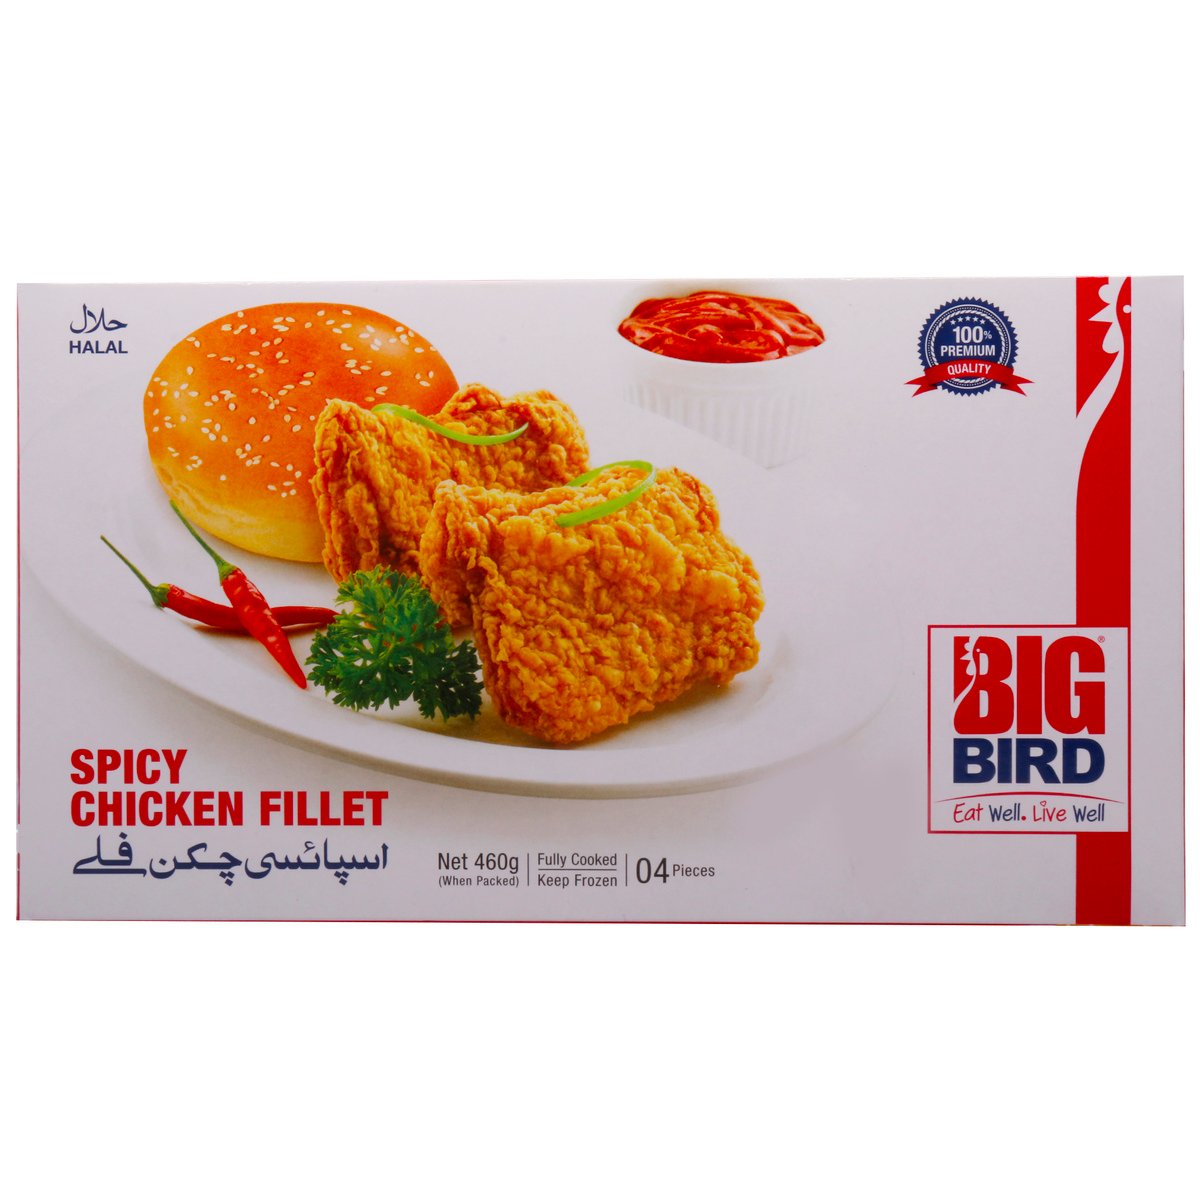 Big Bird Chicken Fillet Spicy 460g